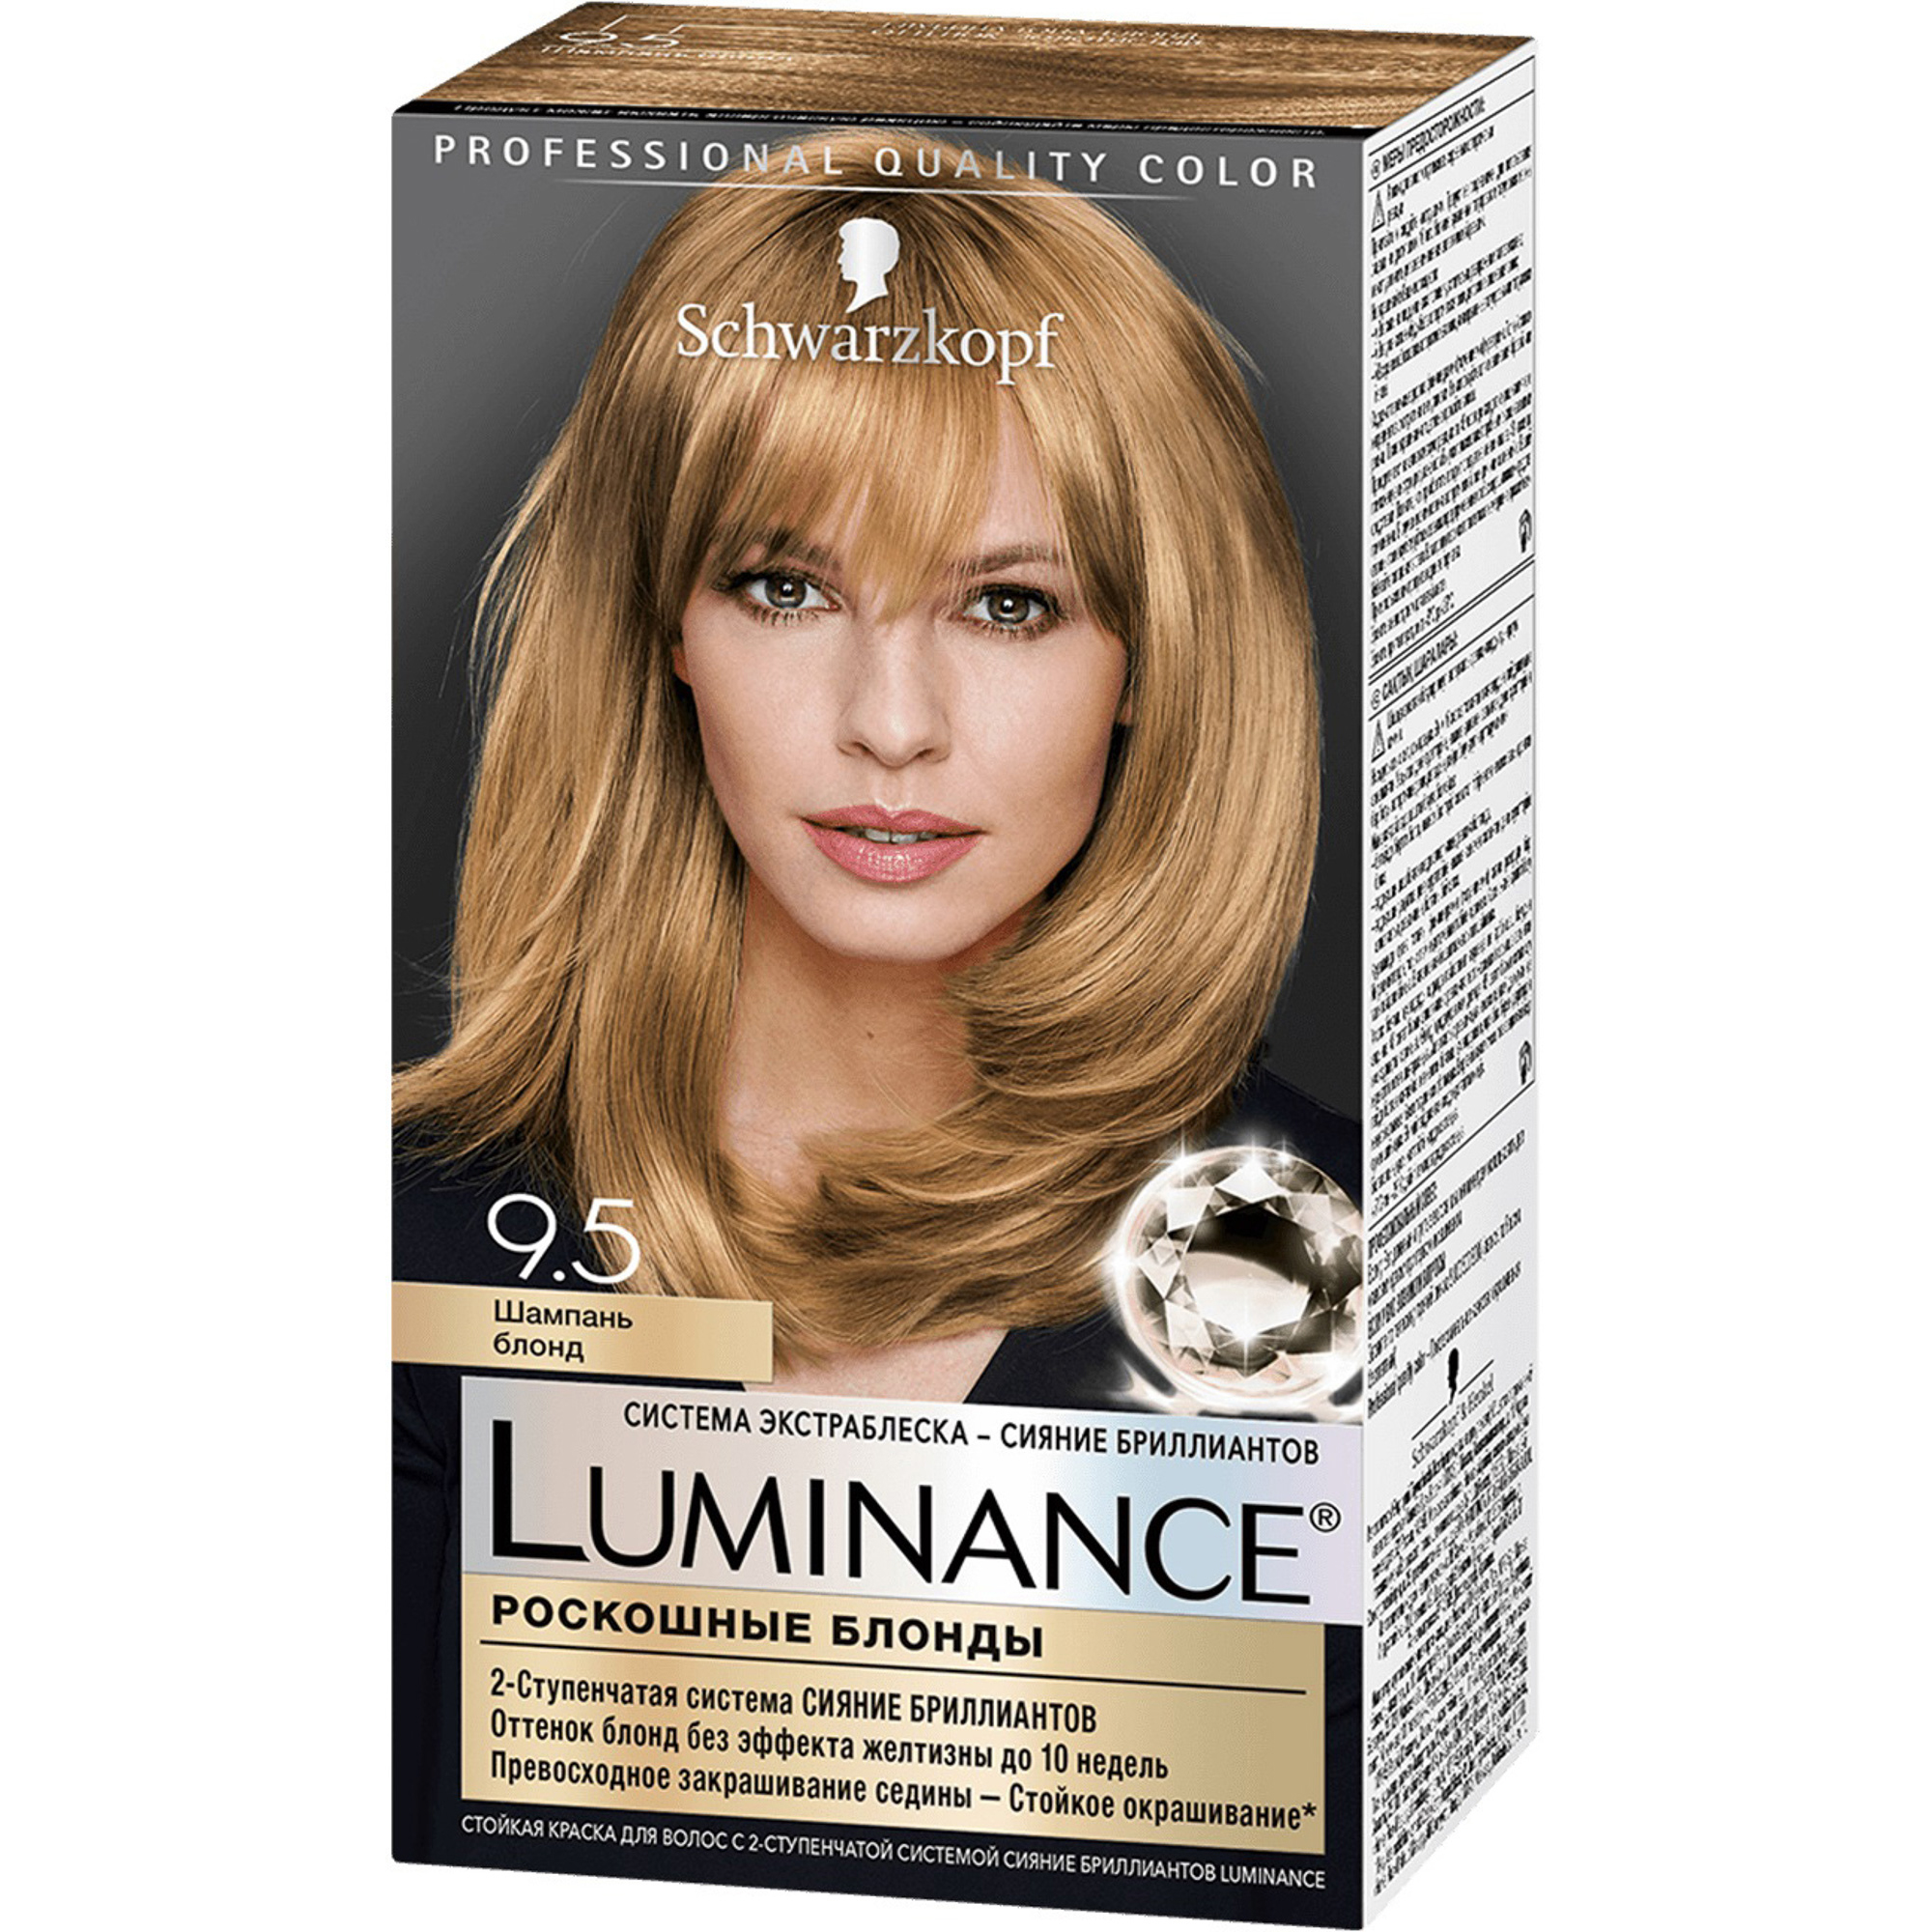 фото Краска для волос schwarzkopf luminance color 9.5 шампань блонд